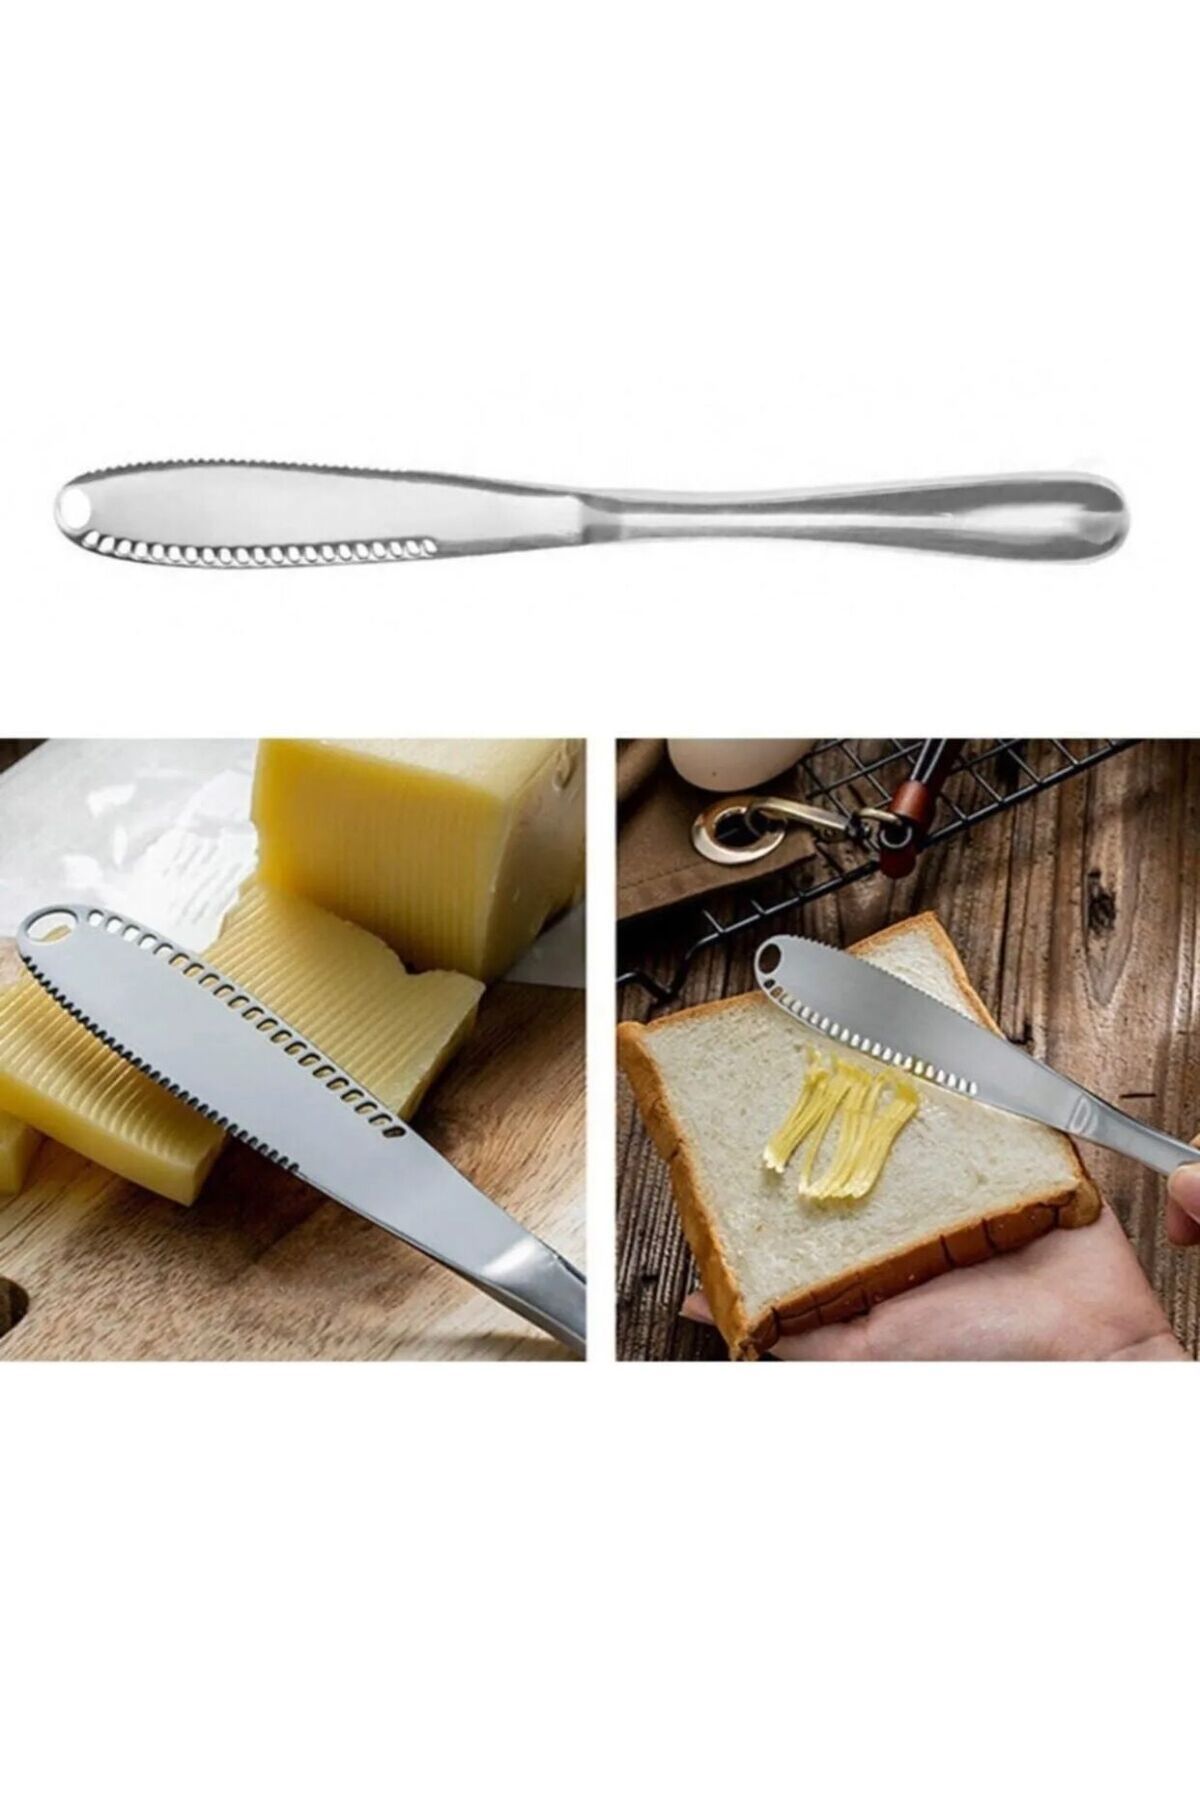 YDGR 1 Adet Modern Tereyağı Bıçağı | Kahvaltı Bıçağı - 1'li Bal , Kaymak , Tereyağı Bıçağı